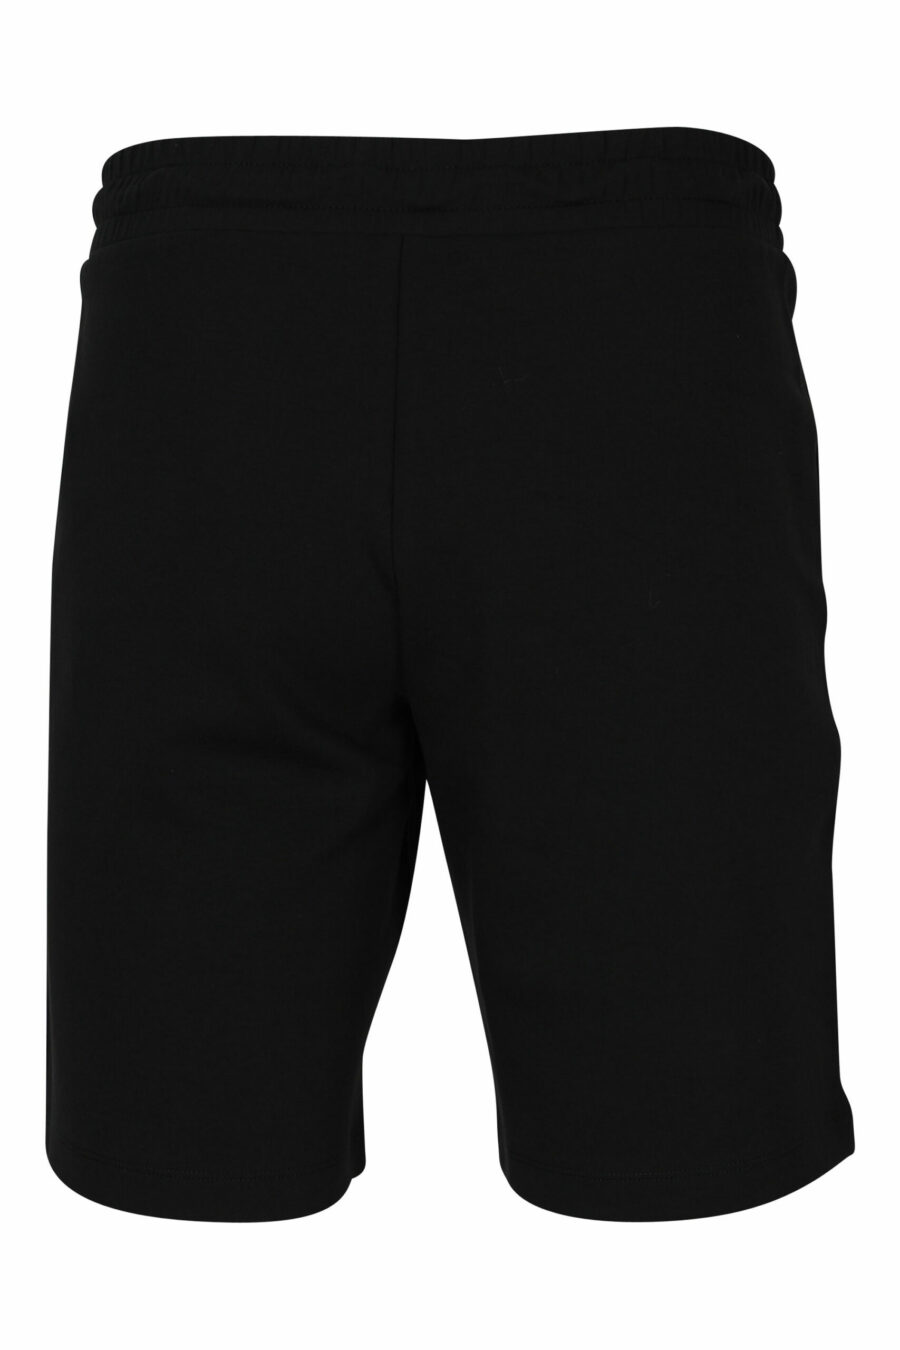 Trainingshose schwarze Shorts mit weißem "lux identity" Minilogo auf schwarzer Platte - 107532 skaliert